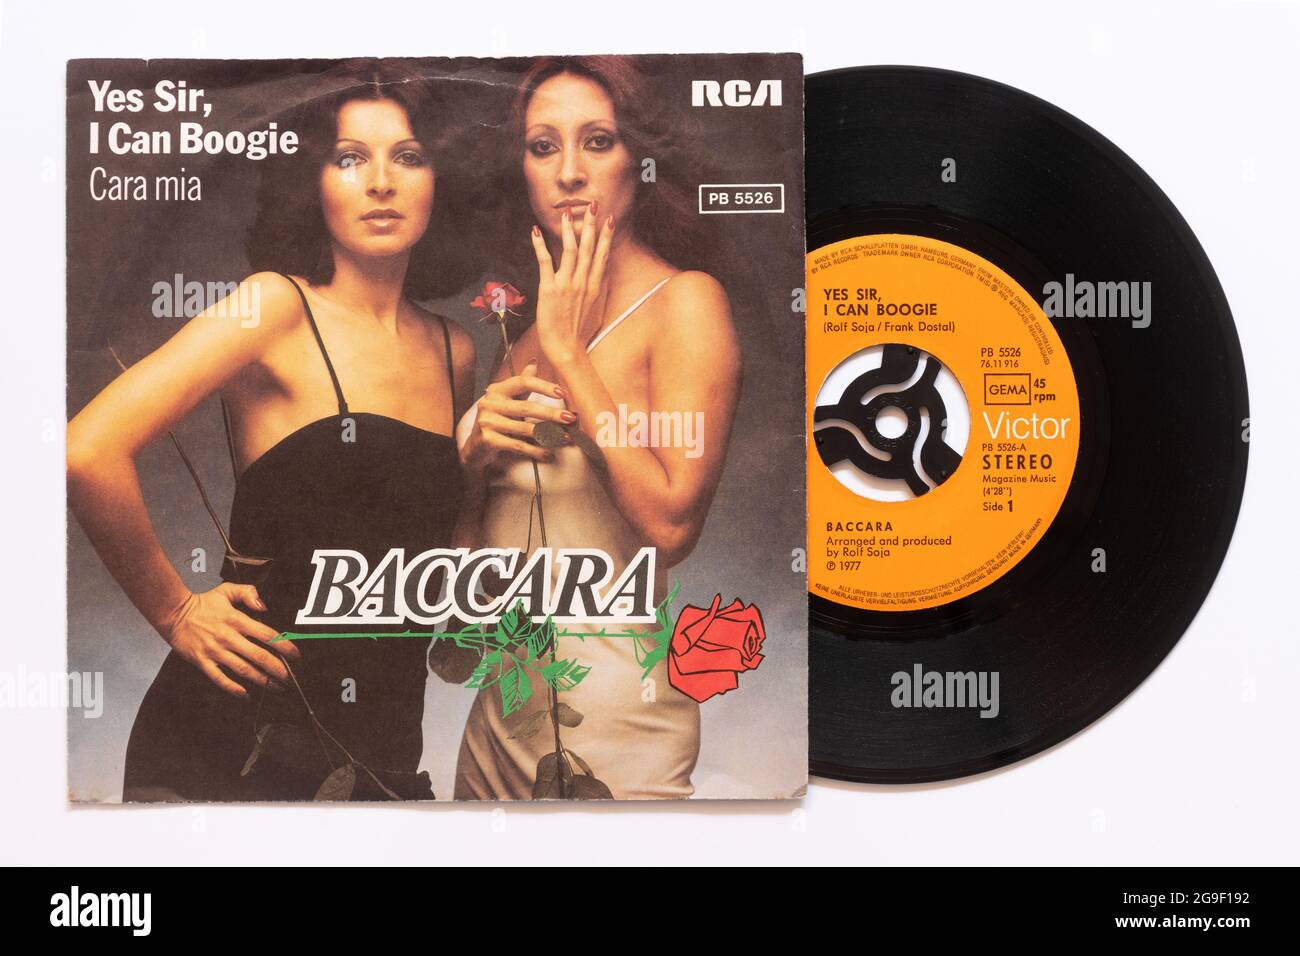 'Oui Sir, je peux Boogie' par le duo vocal espagnol Baccara, une photo de la 7' single vinyle 45 tr/min record dans la pochette photo Banque D'Images